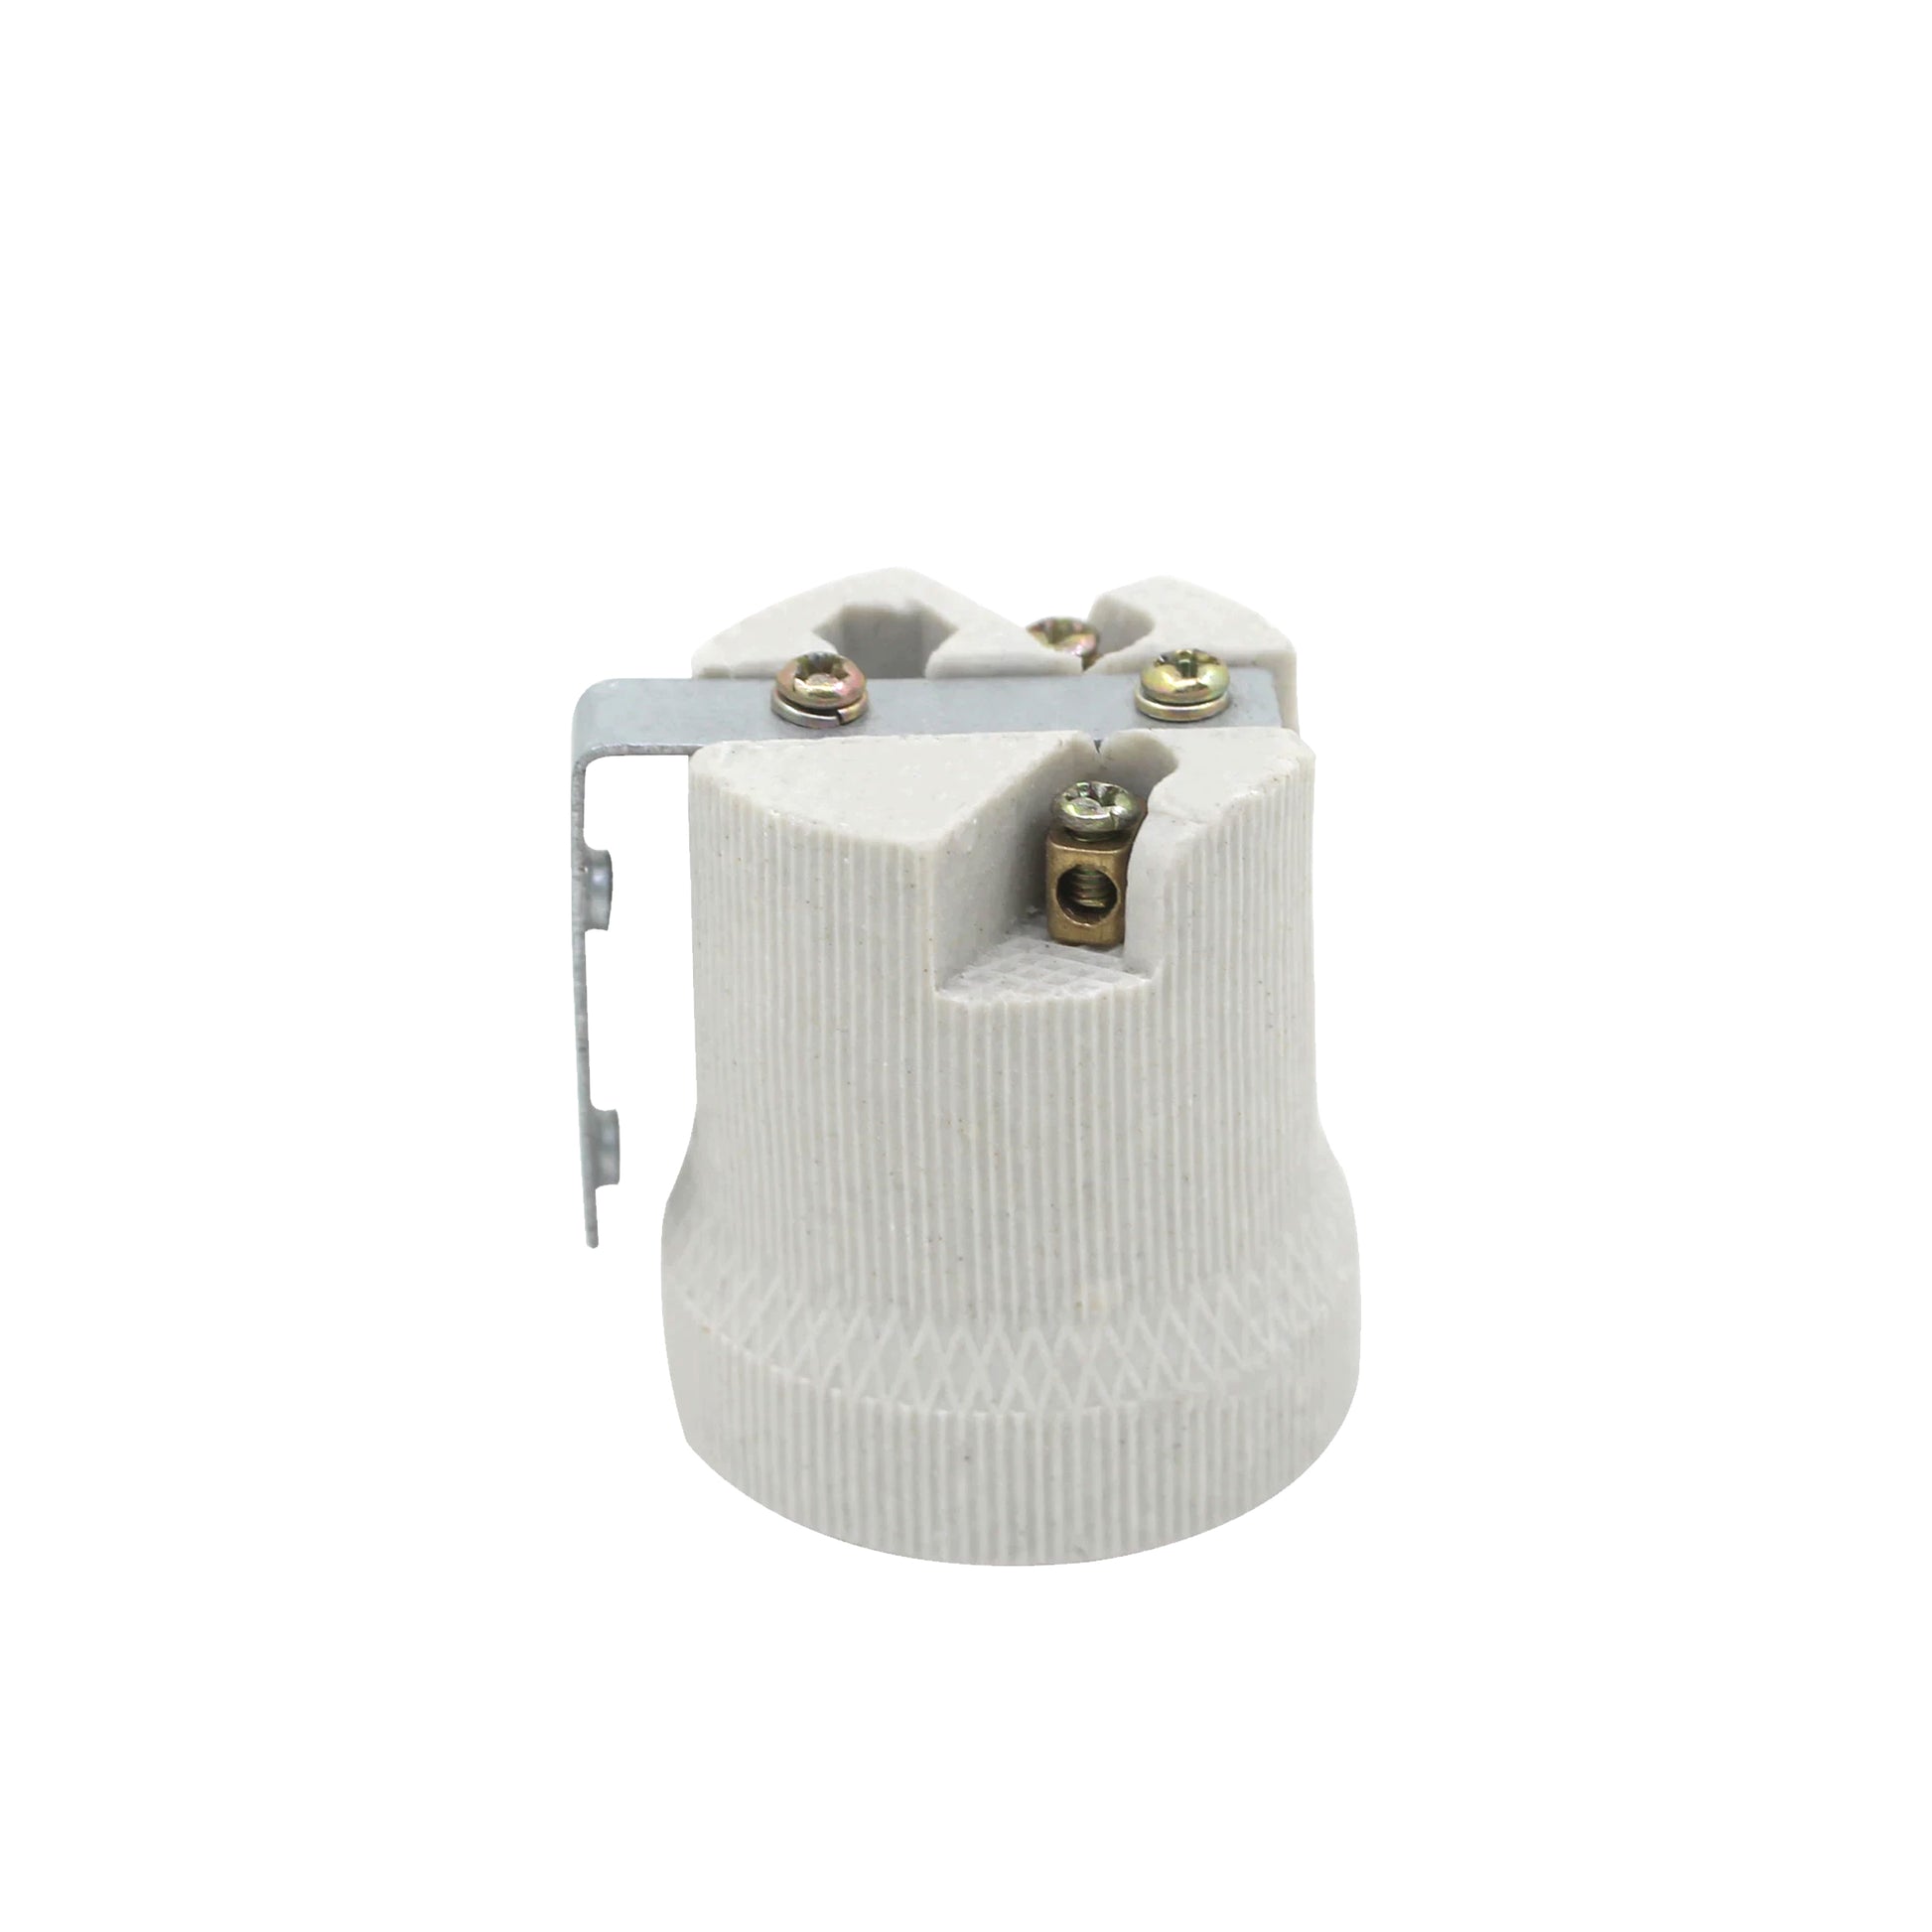 6 PackE27 Bulb Holder Edison Screw White Ceramic Porcelain Lamp holder For Table Lamp E27 60W Plain Lamp holder Socket UK.